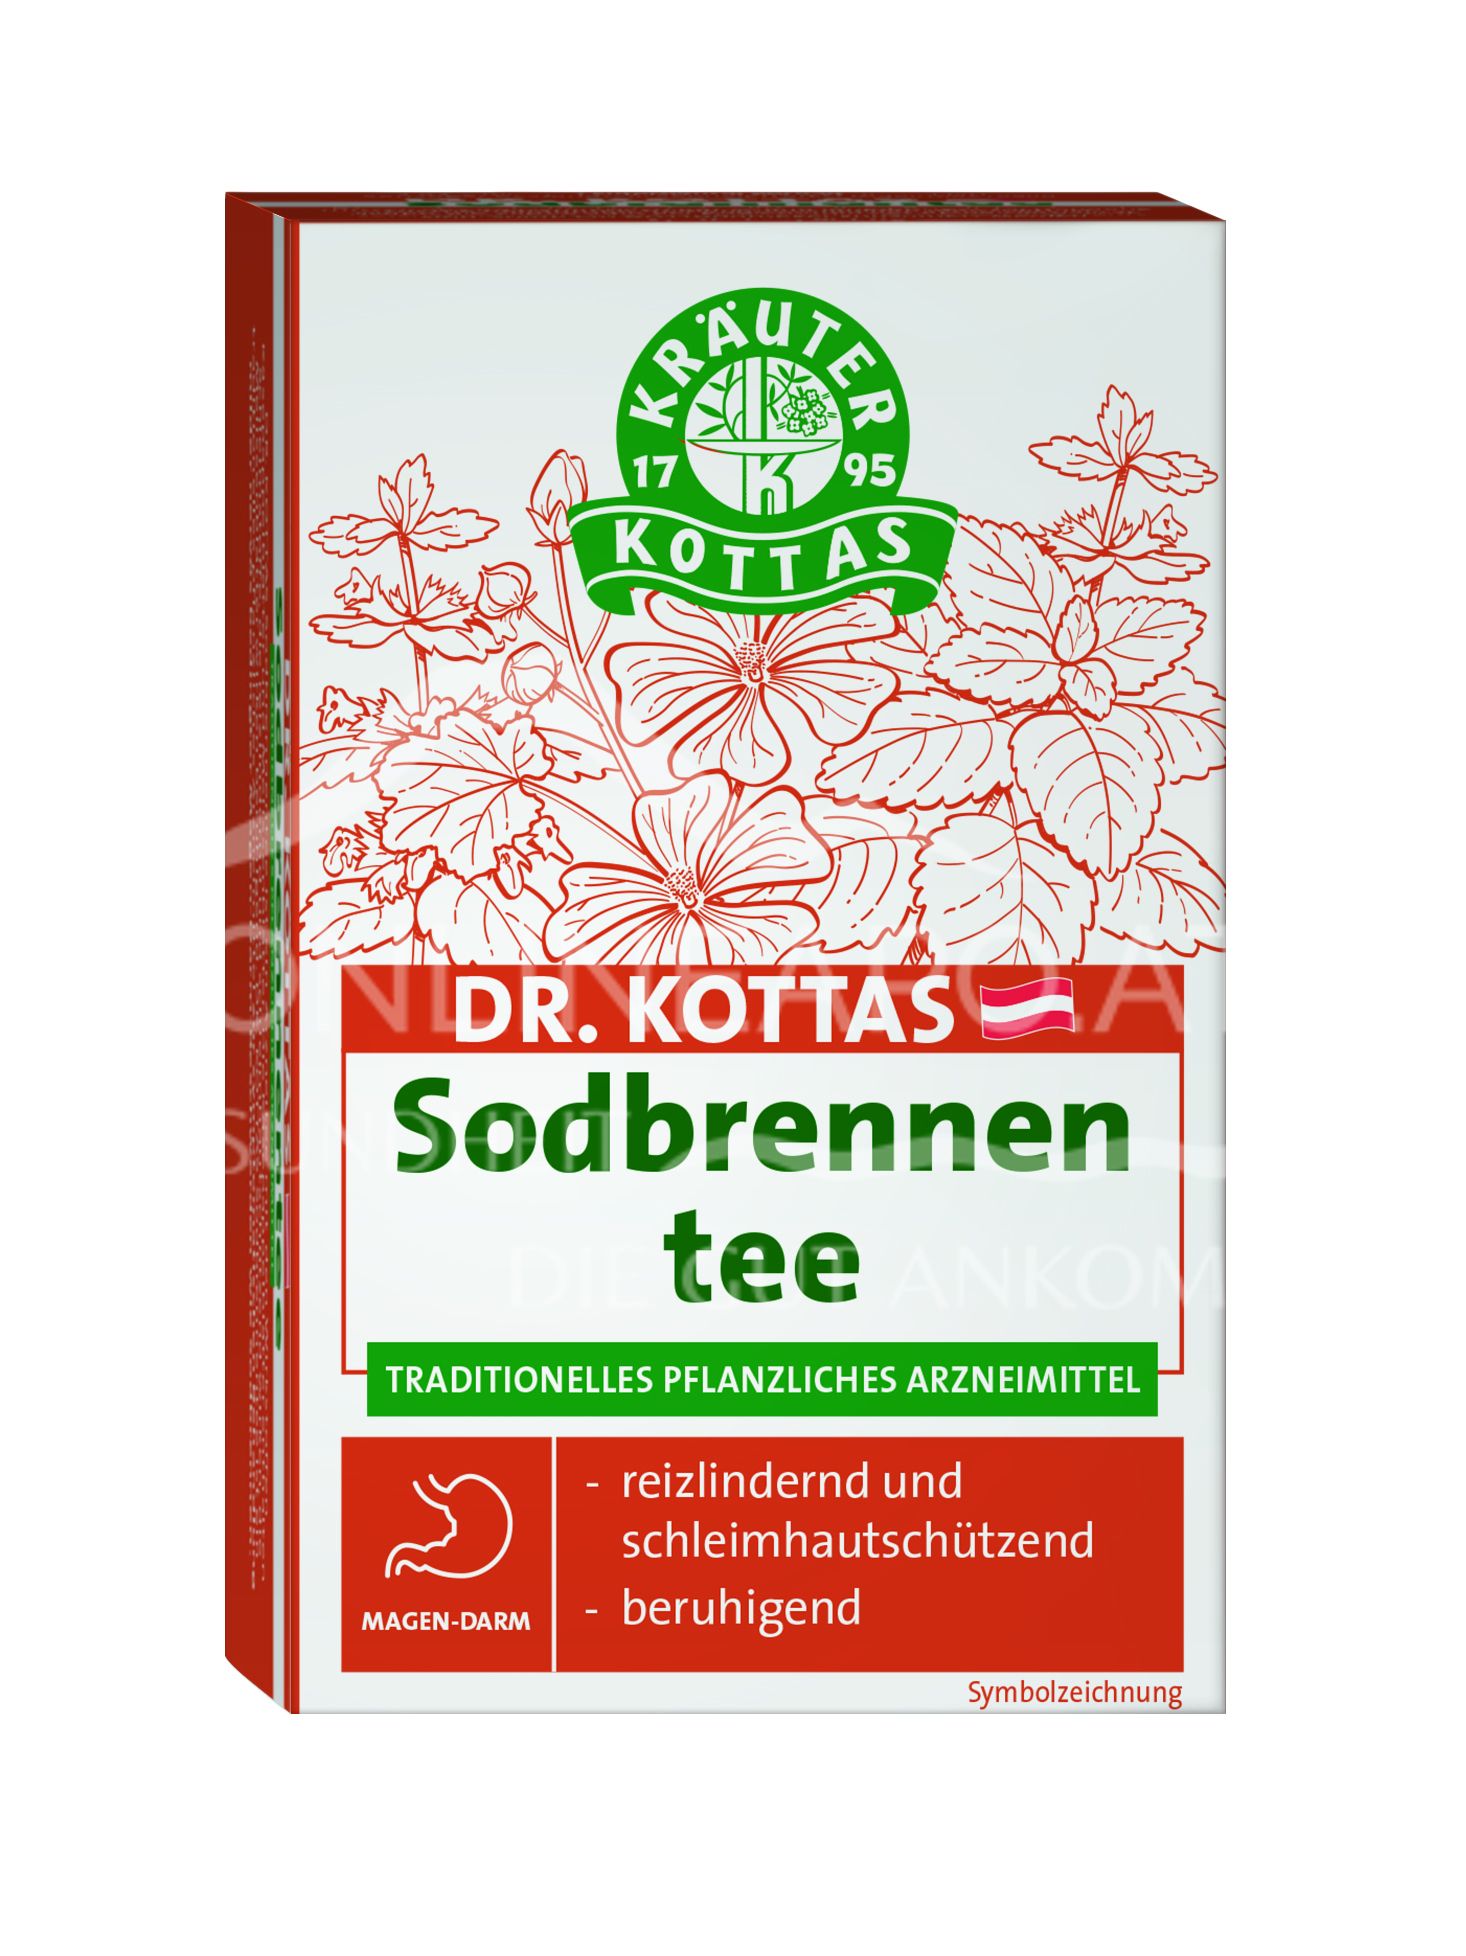 Dr. Kottas Sodbrennentee